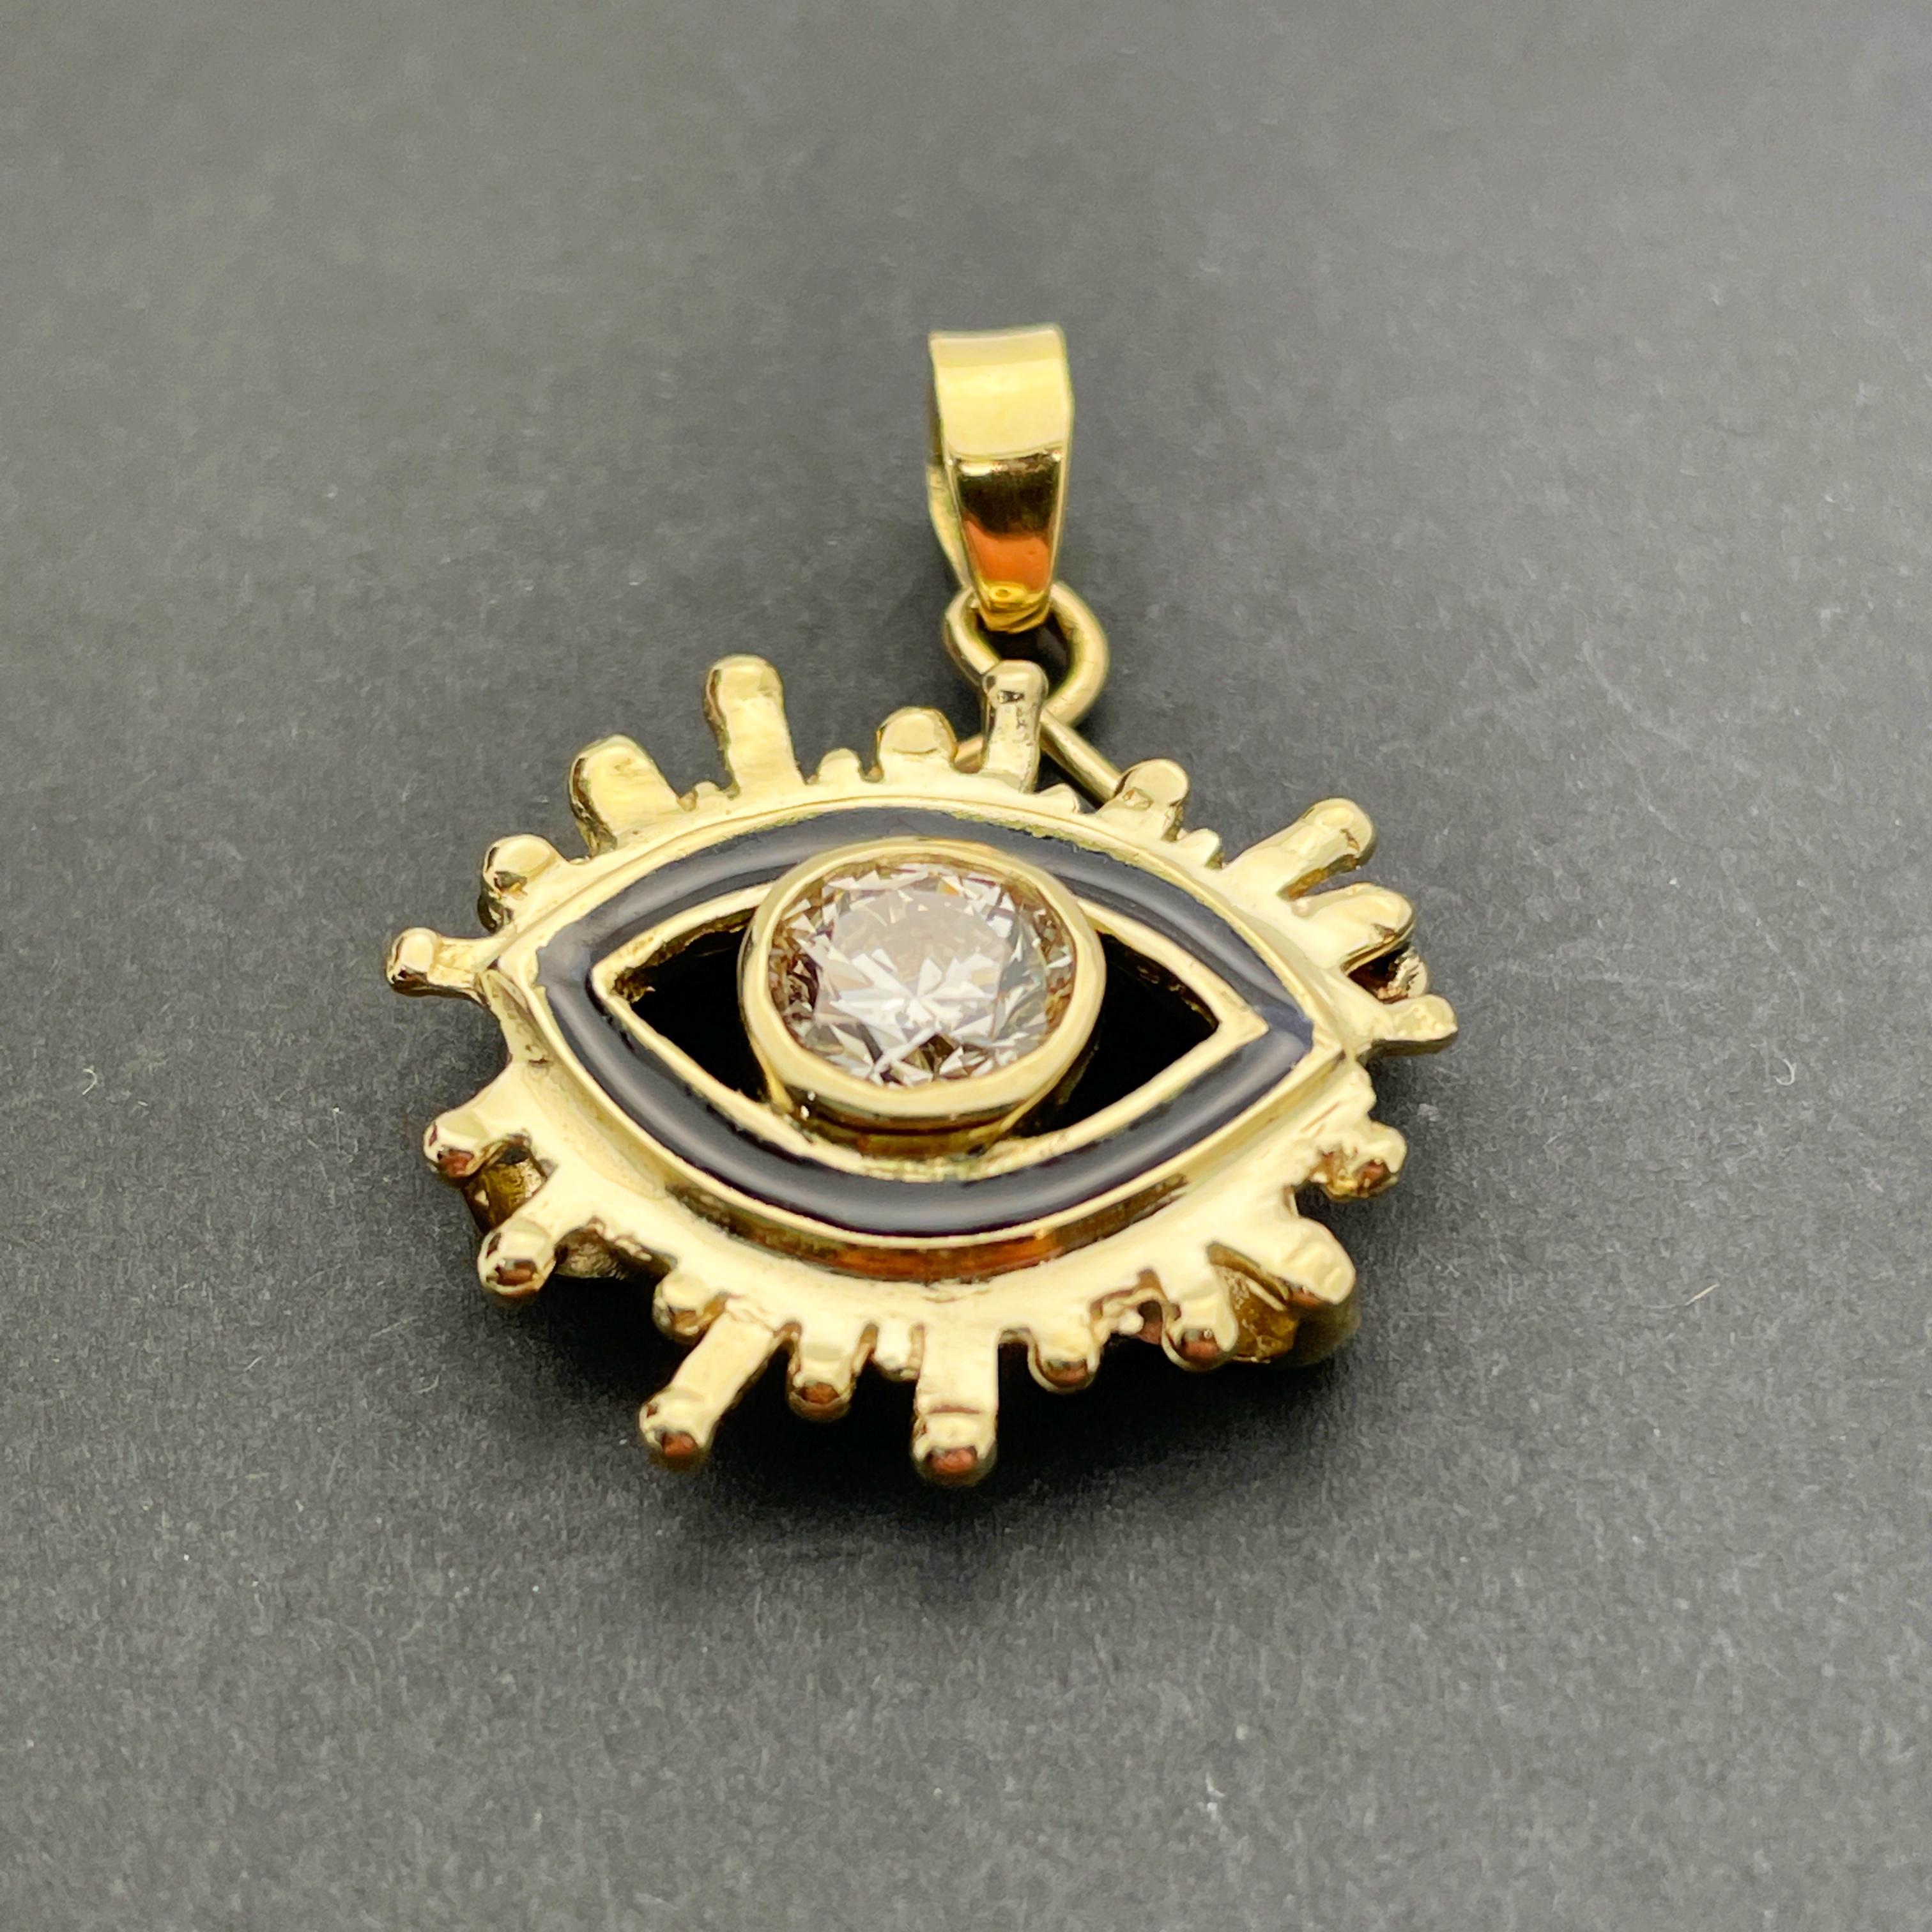 Taille ronde Pendentif en or jaune 18 carats avec diamants et émail 0,90 carat « Eye » certifiés GIA, fait sur mesure